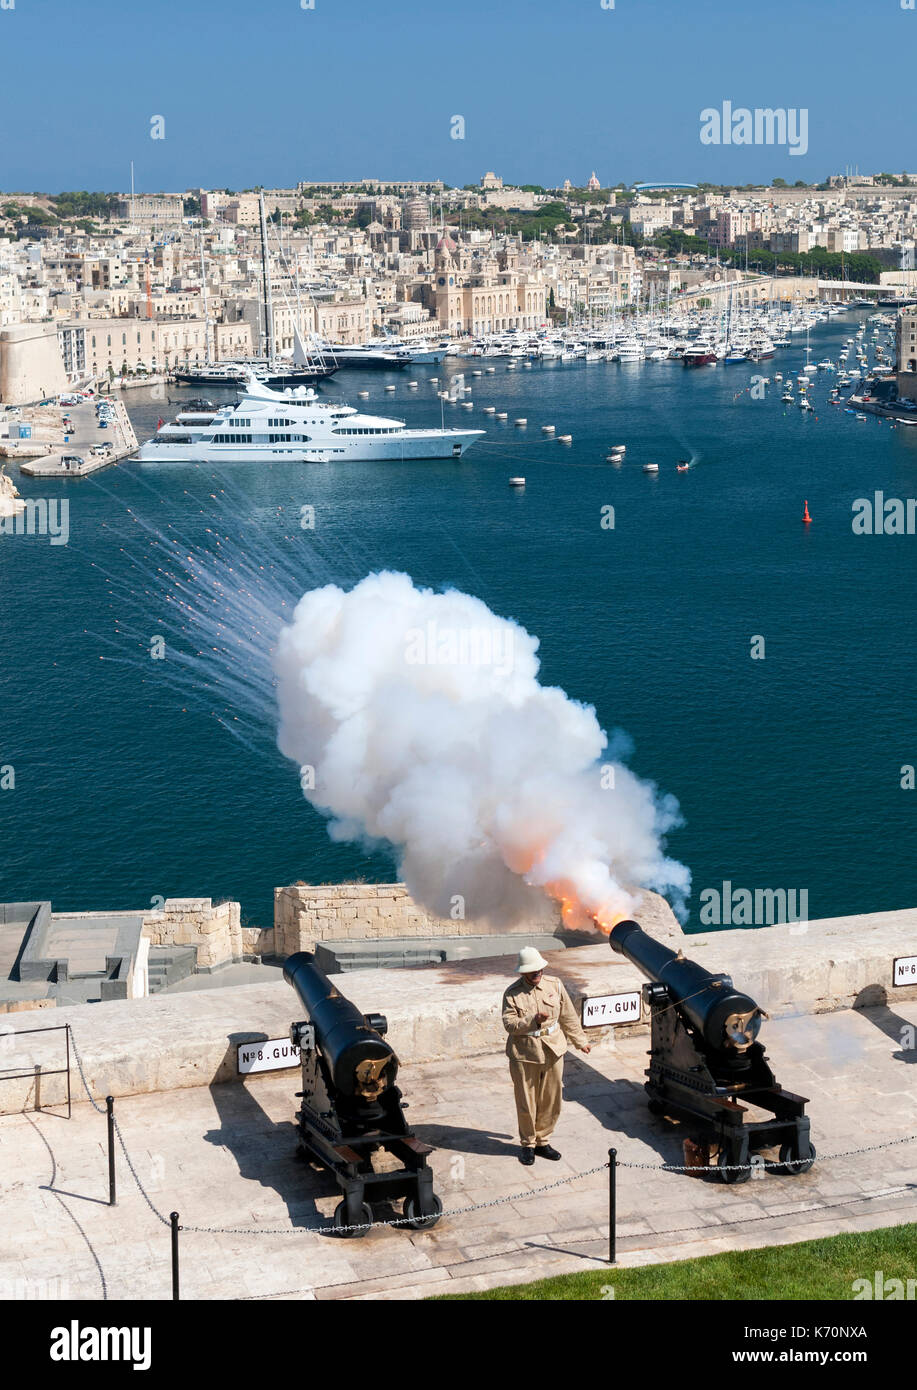 Le canon de midi ne soit tiré de la batterie de salut à La Valette,  capitale de Malte Photo Stock - Alamy